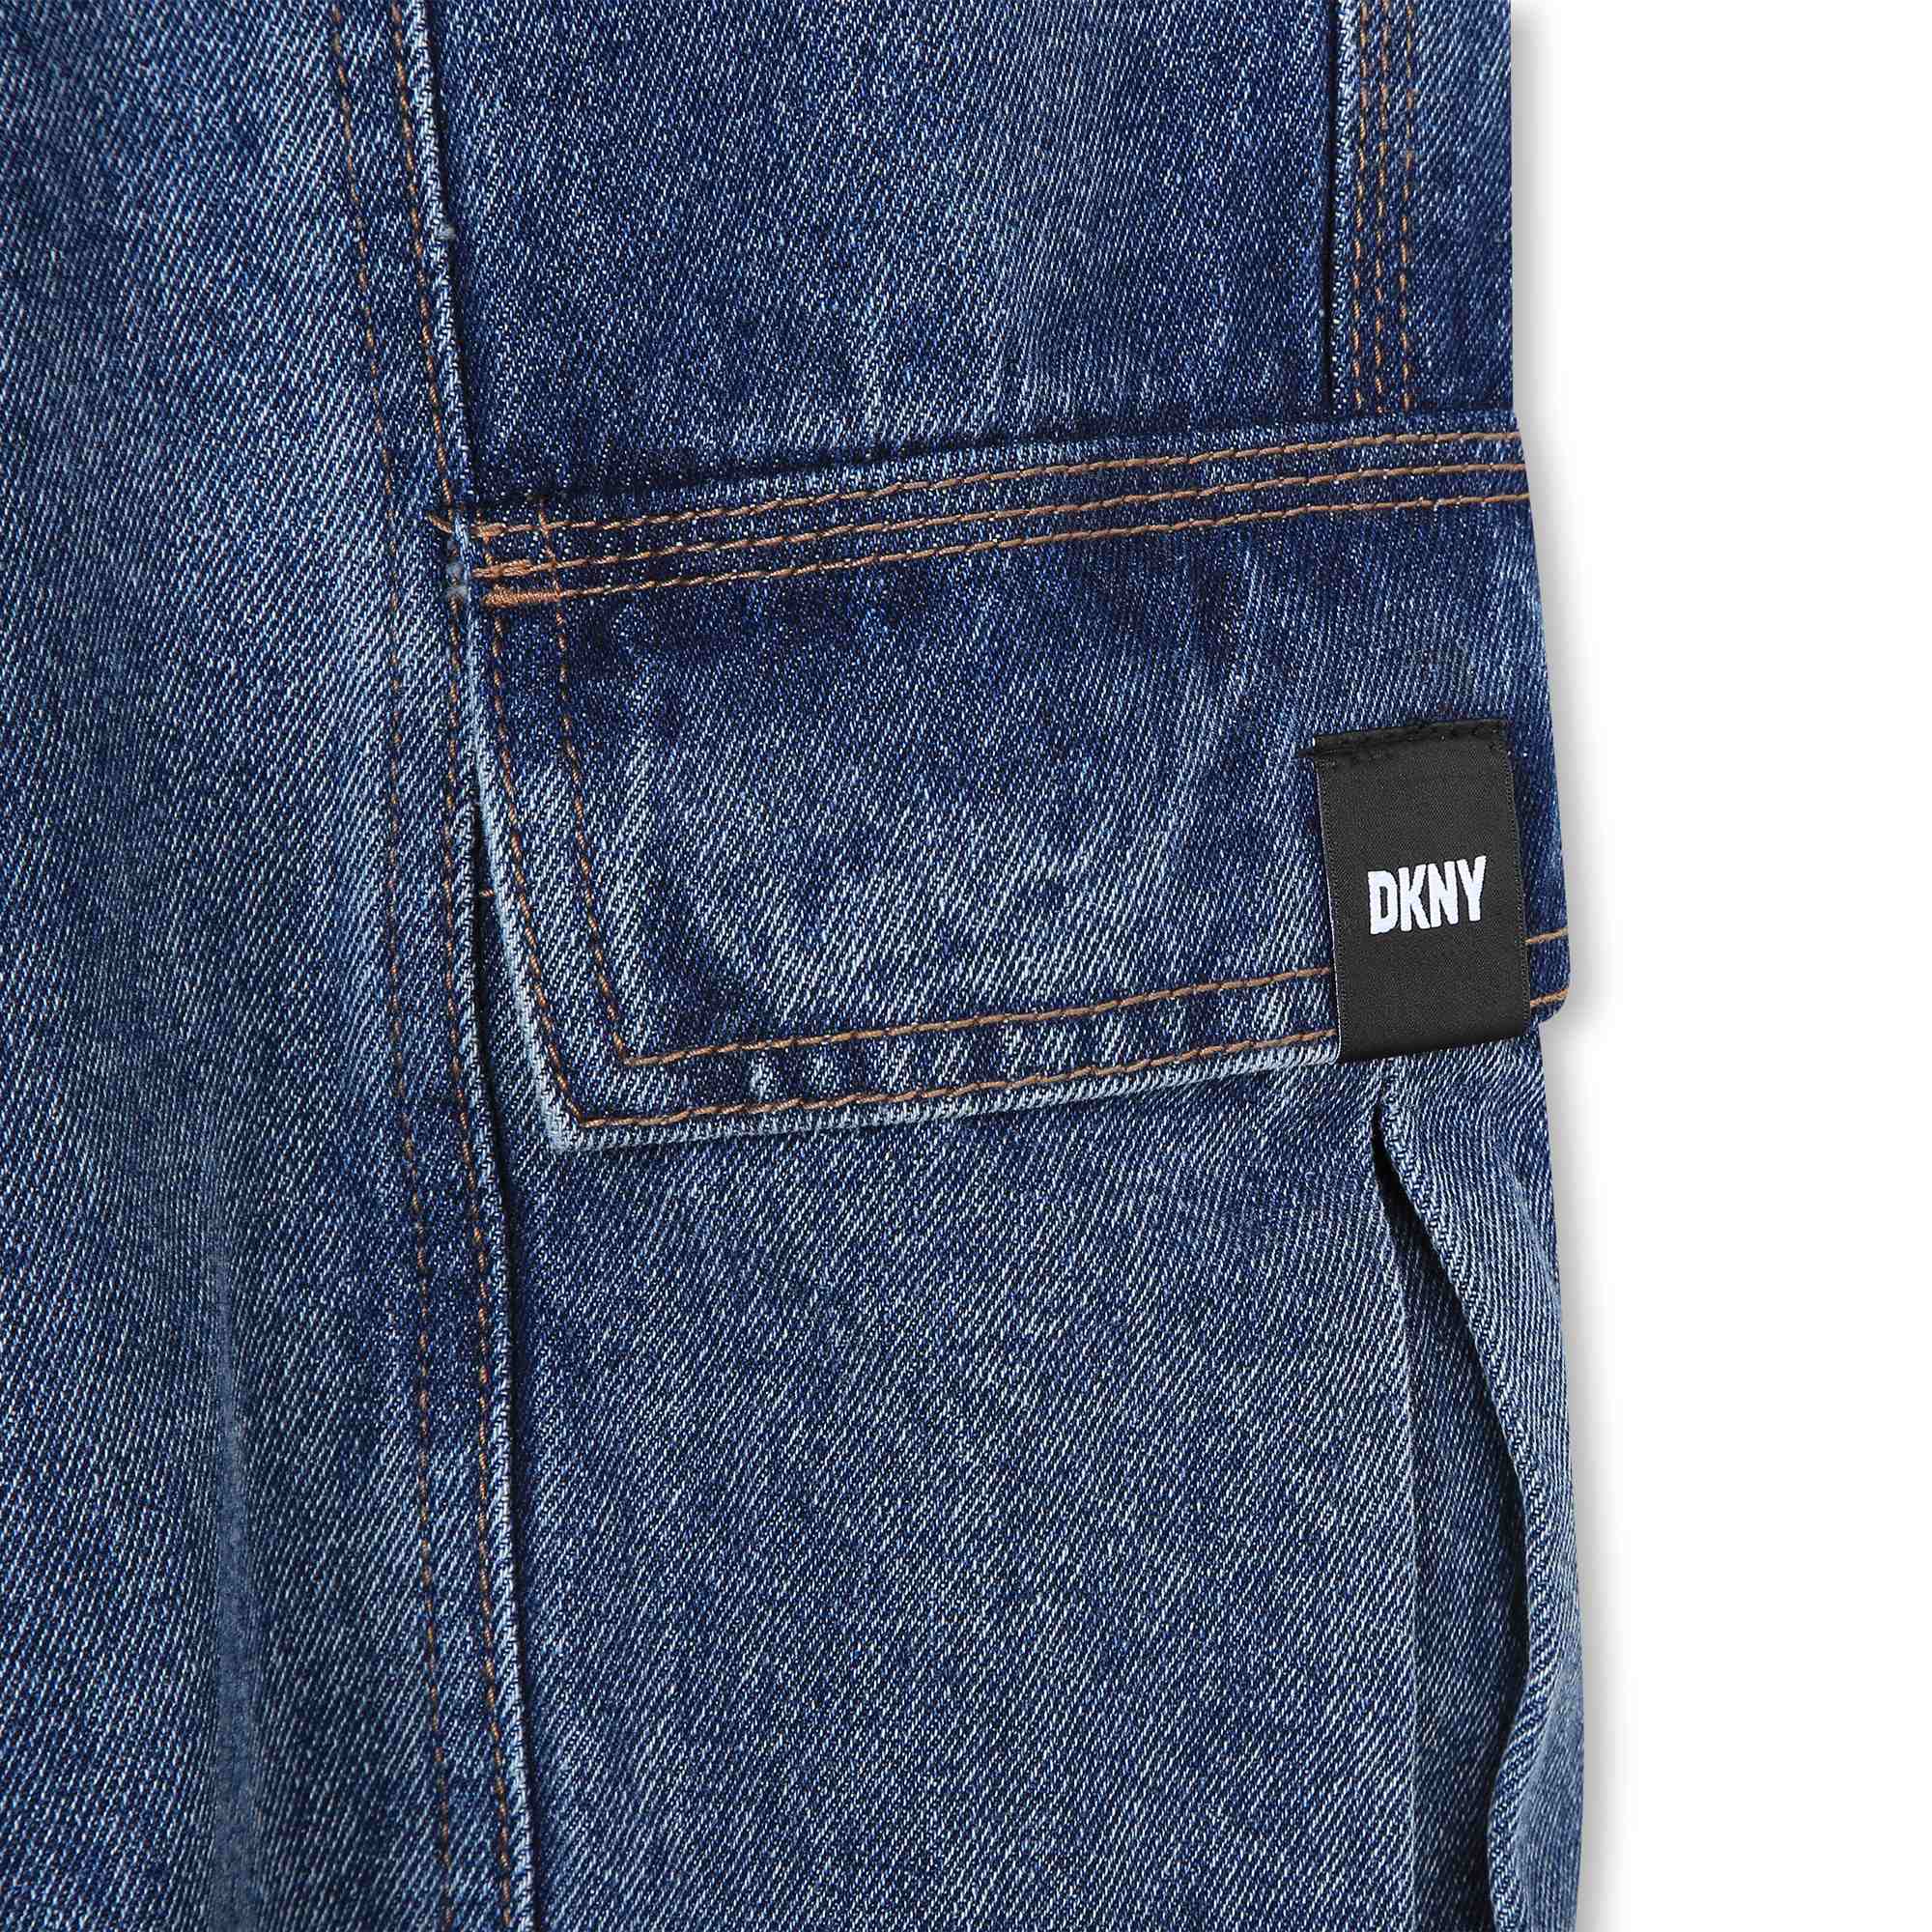 Pantalón vaquero de algodón DKNY para NIÑA